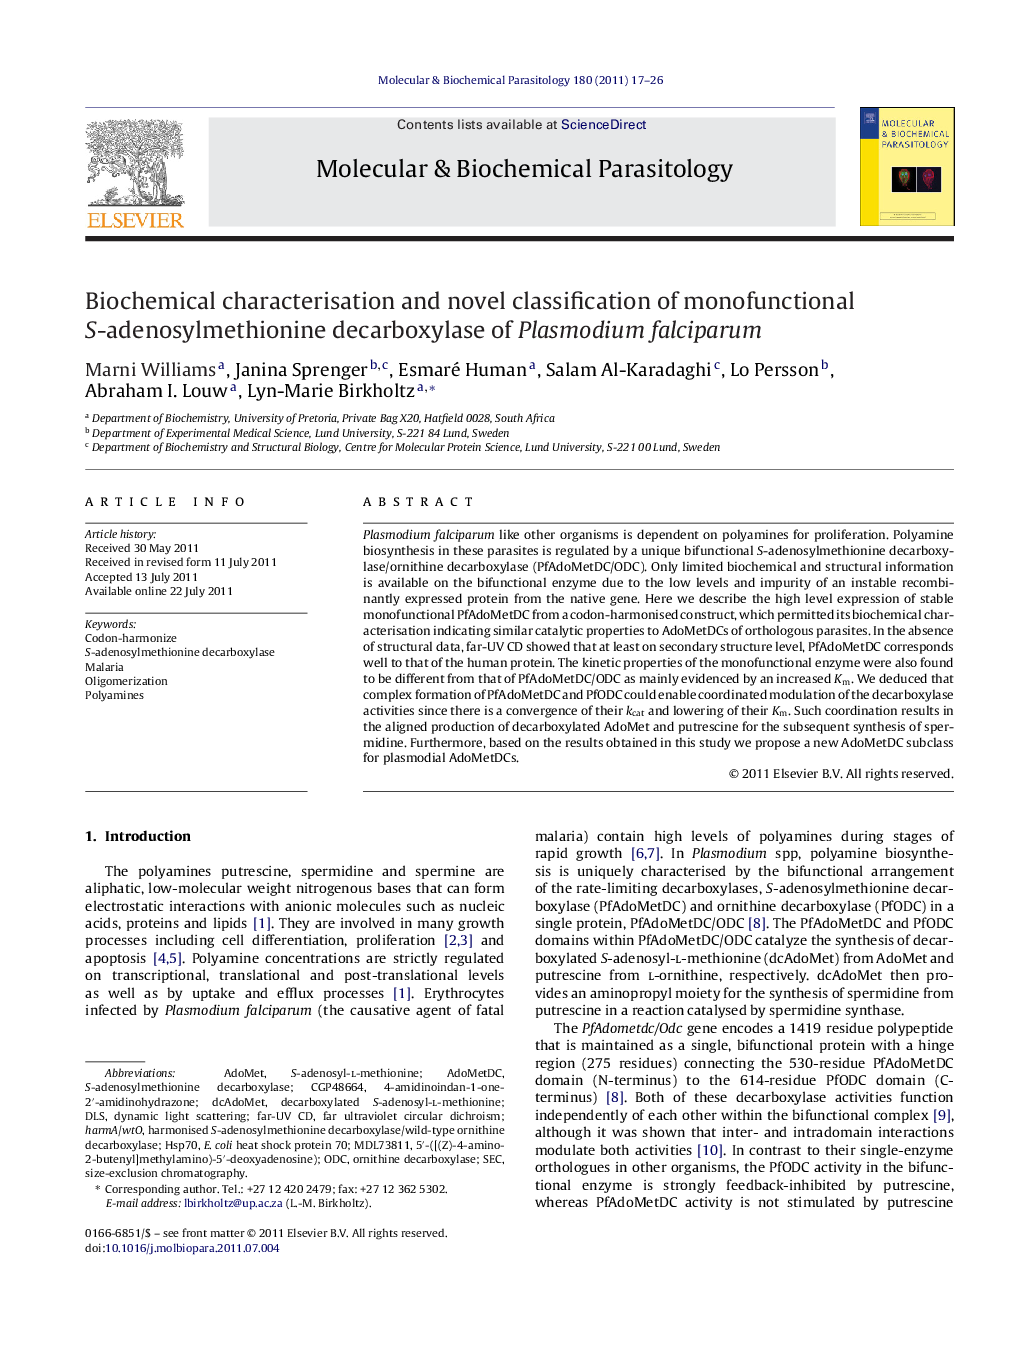 Biochemical characterisation and novel classification of monofunctional S-adenosylmethionine decarboxylase of Plasmodium falciparum